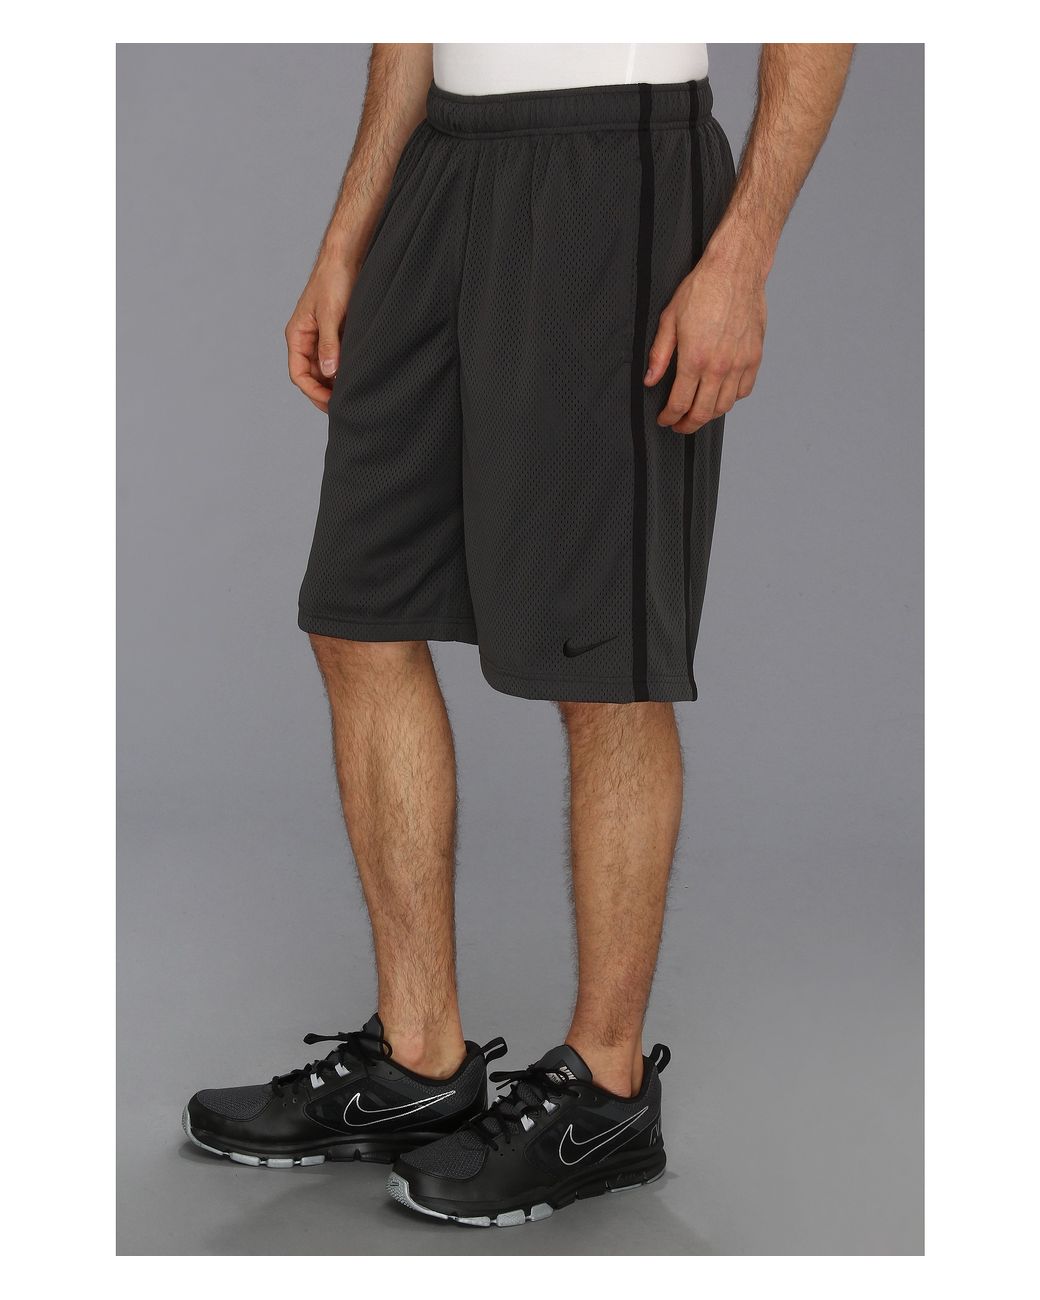 Nike Monster Mesh Short in Anthracite/Black/Black (Black) for Men | Lyst